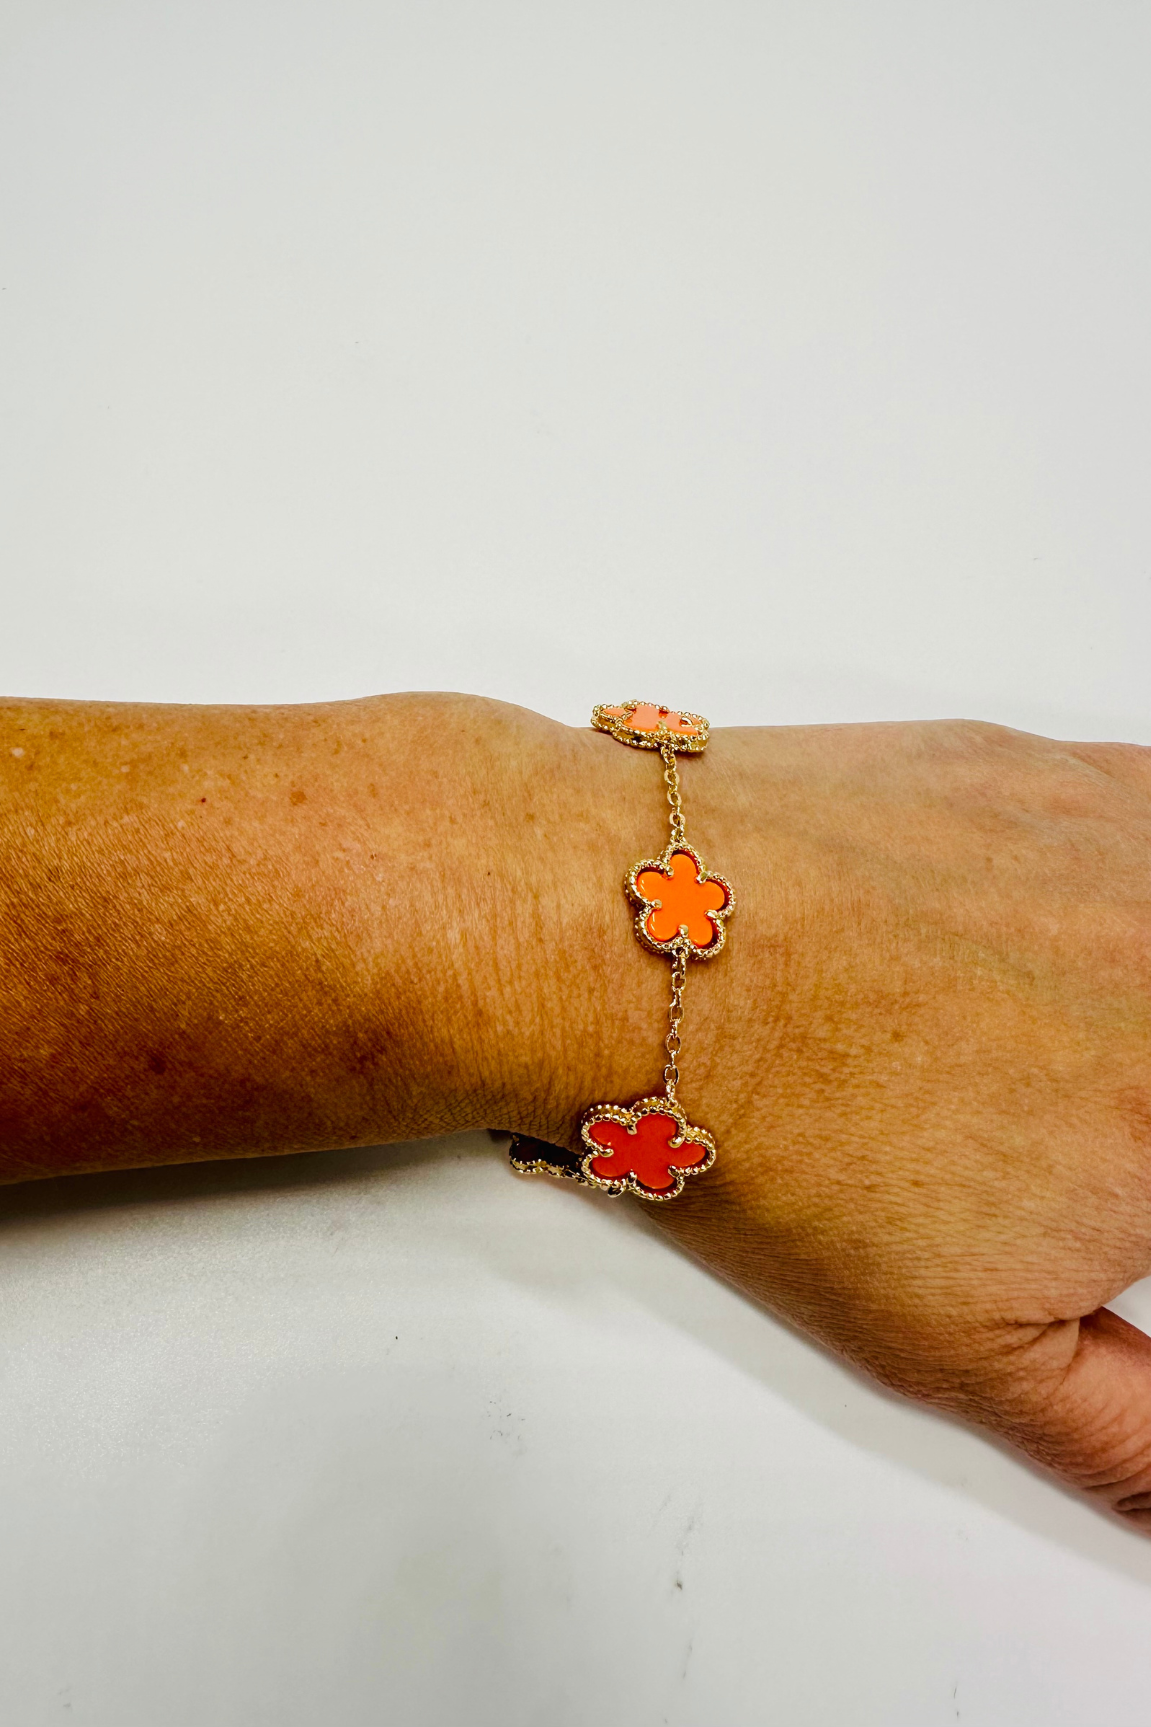 Inspiring Flowers That Last Forever Bracelet (Orange)